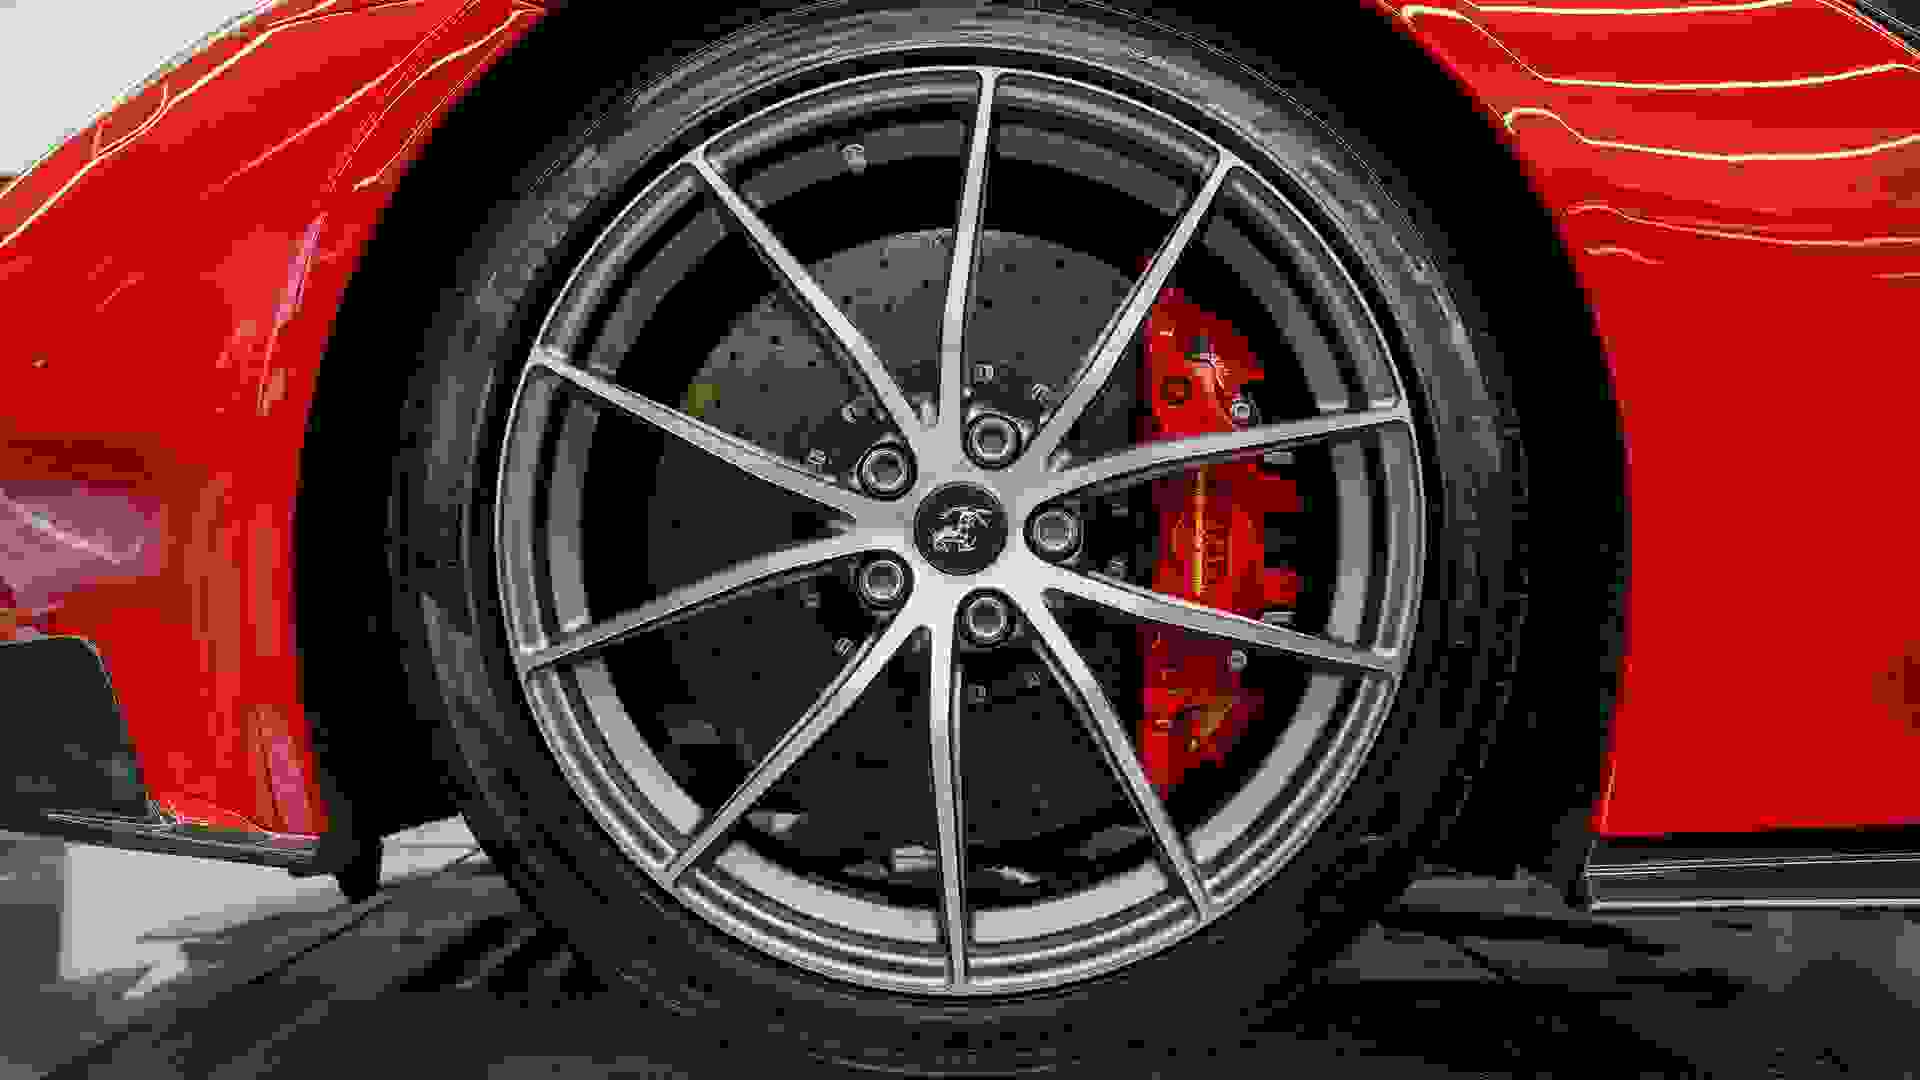 Ferrari F12 Photo 82f9efd3-84d1-4812-8619-4a3f1badac26.jpg